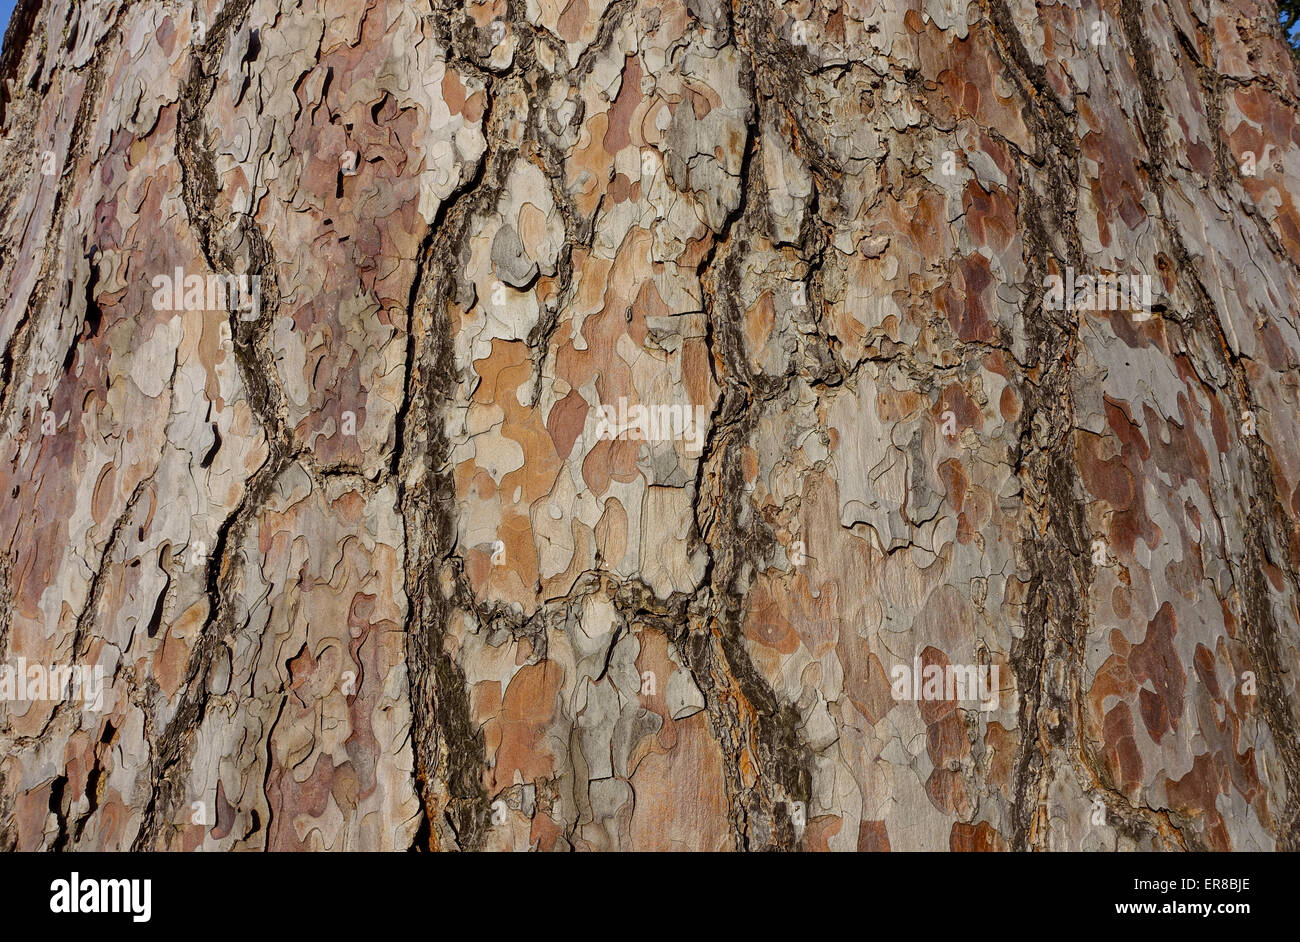 Schlangenhautkiefer (Pinus sp.), Landschaftsgarten, UNESCO Weltkulturerbe, Lednice, Kreis Breclav, Südmähren, Tschechien Stock Photo